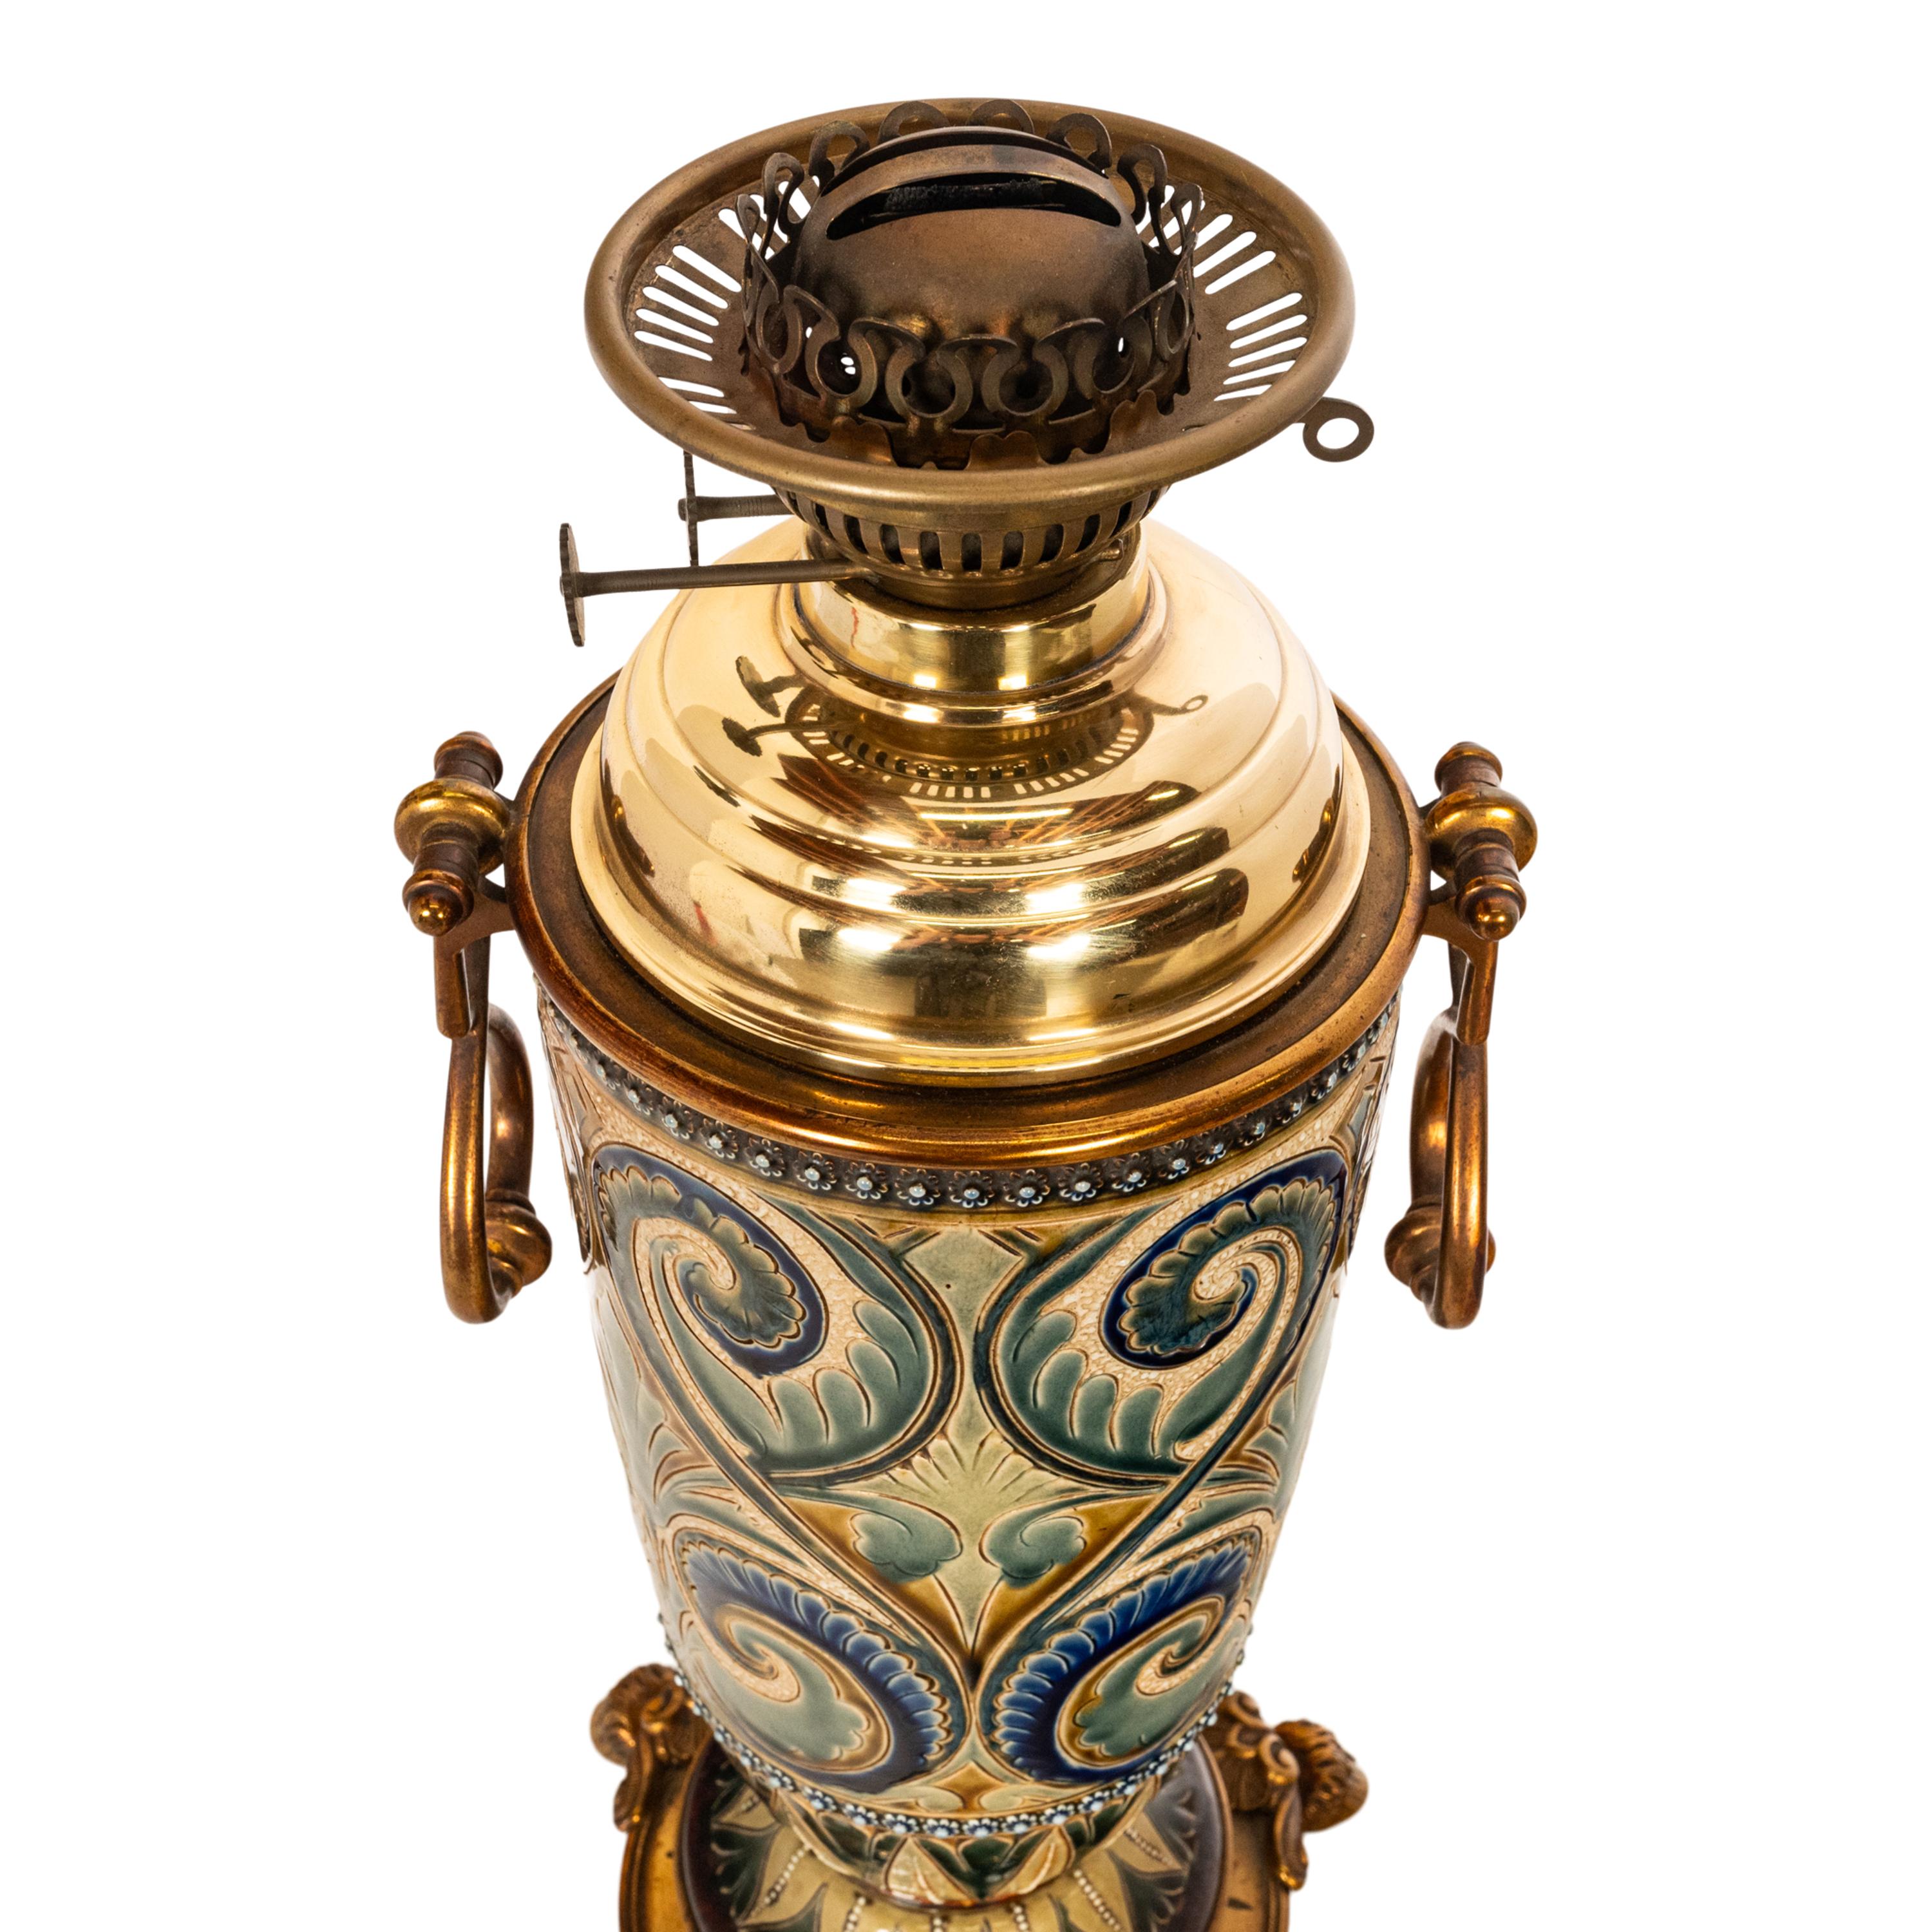 Antique Art Pottery Stoneware Dalton Lambeth Oil Lamp Signed Edith Lupton 1884 For Sale 3